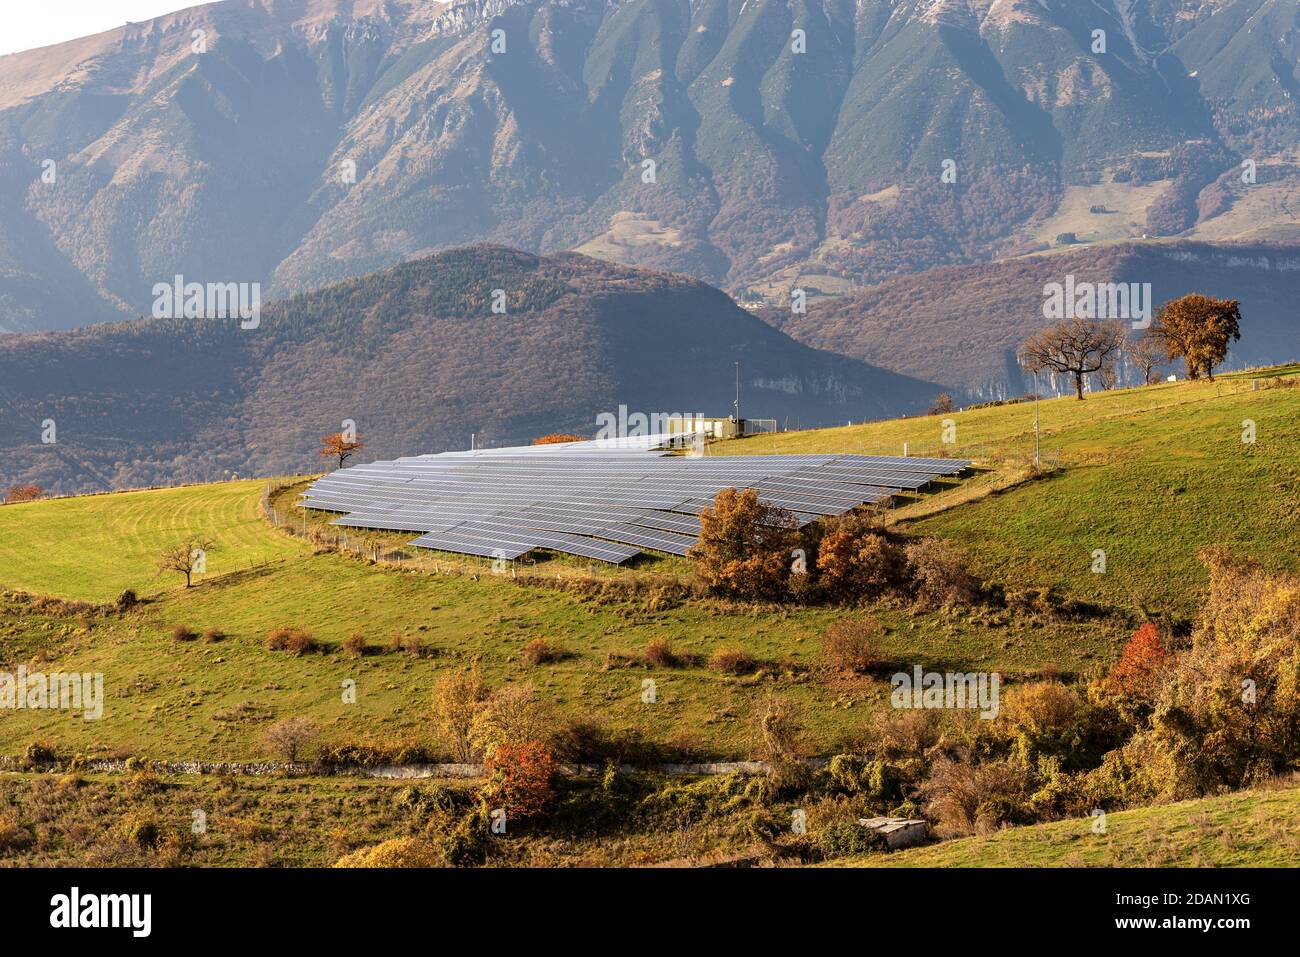 Central solar en los Alpes italianos con muchos paneles solares, Veneto, Italia, Europa. Concepto de energía renovable. Foto de stock